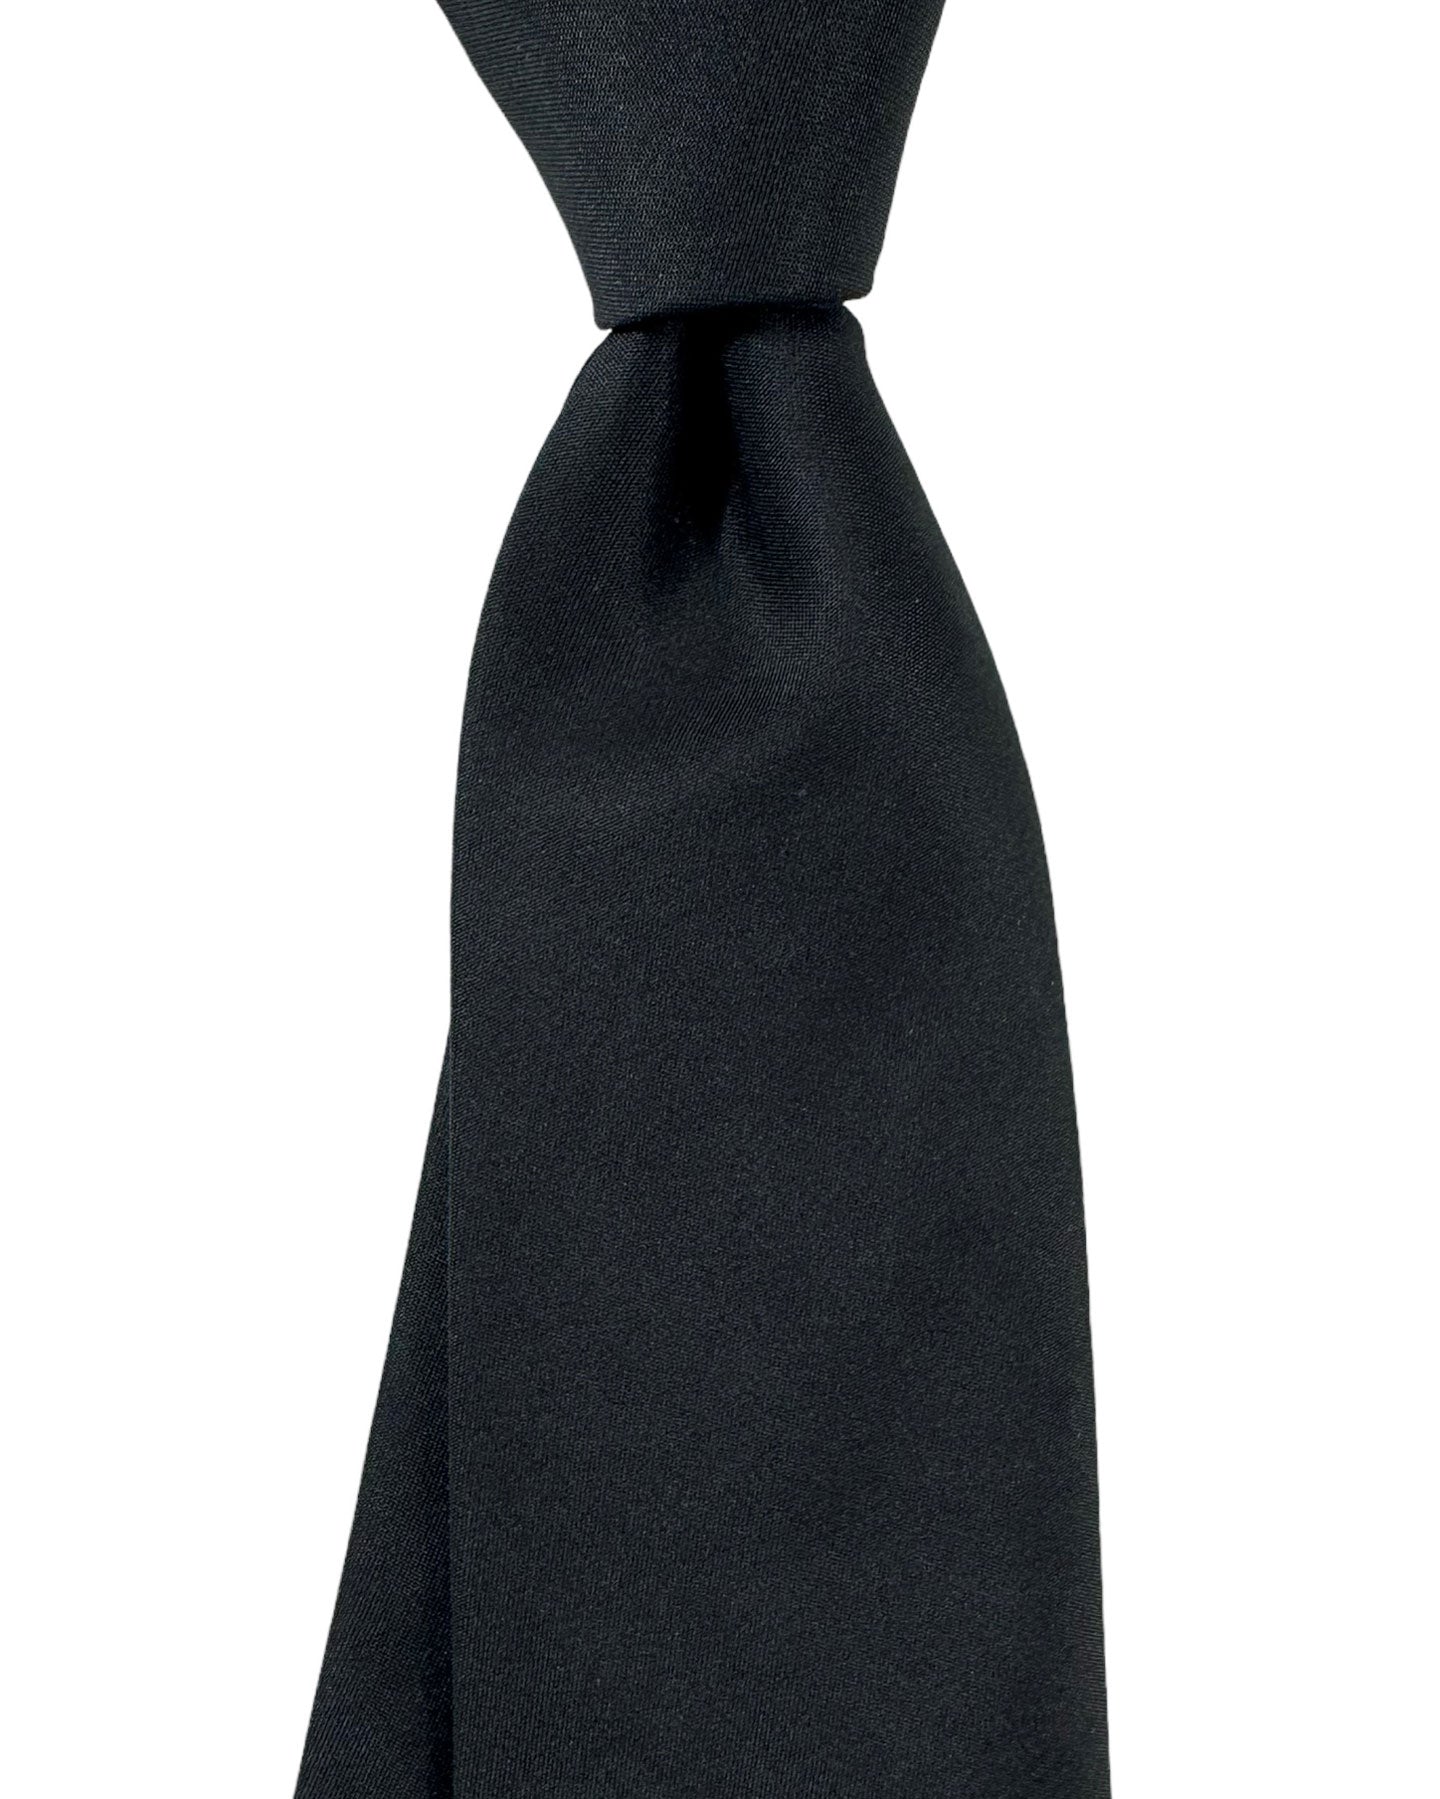 Armani Silk Tie Black Solid Armani Collezioni